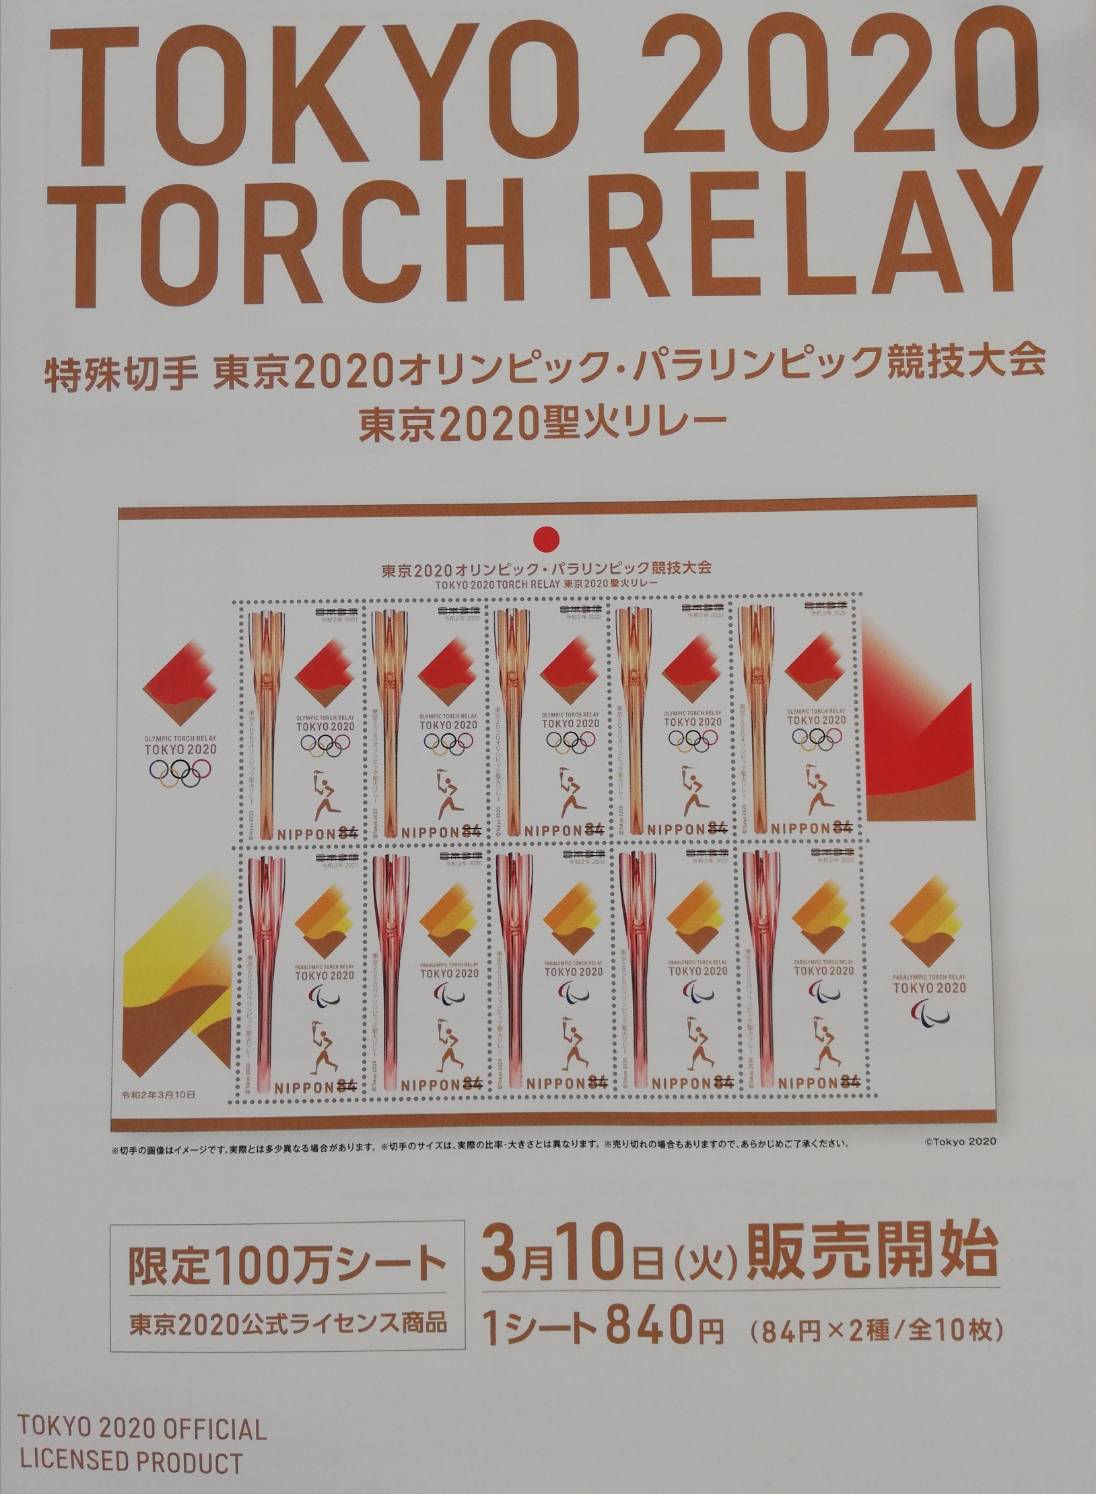 東京聖火リレー記念切手の発売が松戸でも開始 オリンピック パラリンピックの特殊切手 松戸ロード 松戸の地域情報